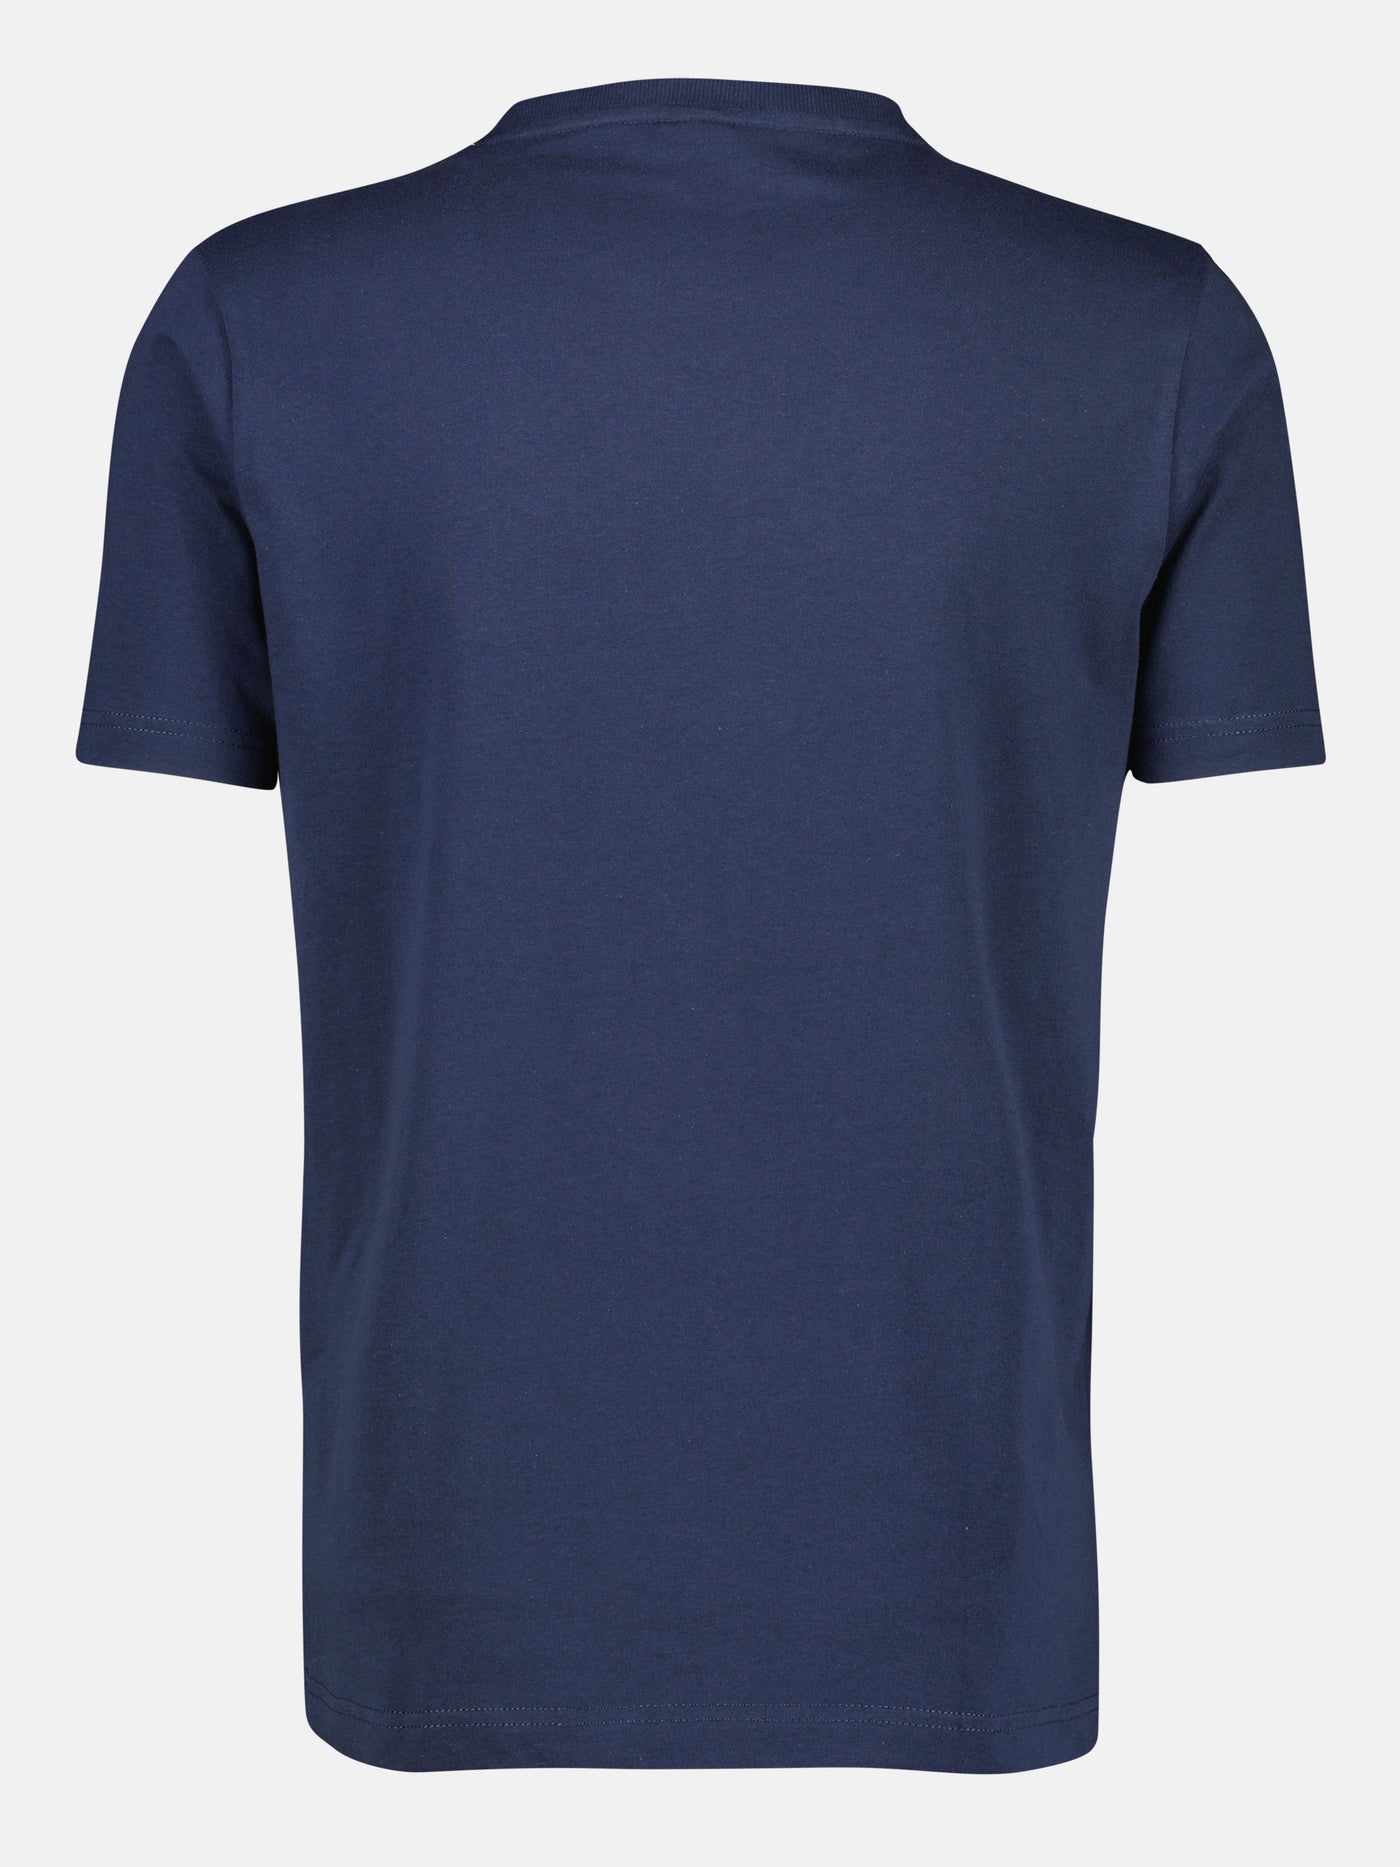 Rundhals T-Shirt mit großem Logo Druck